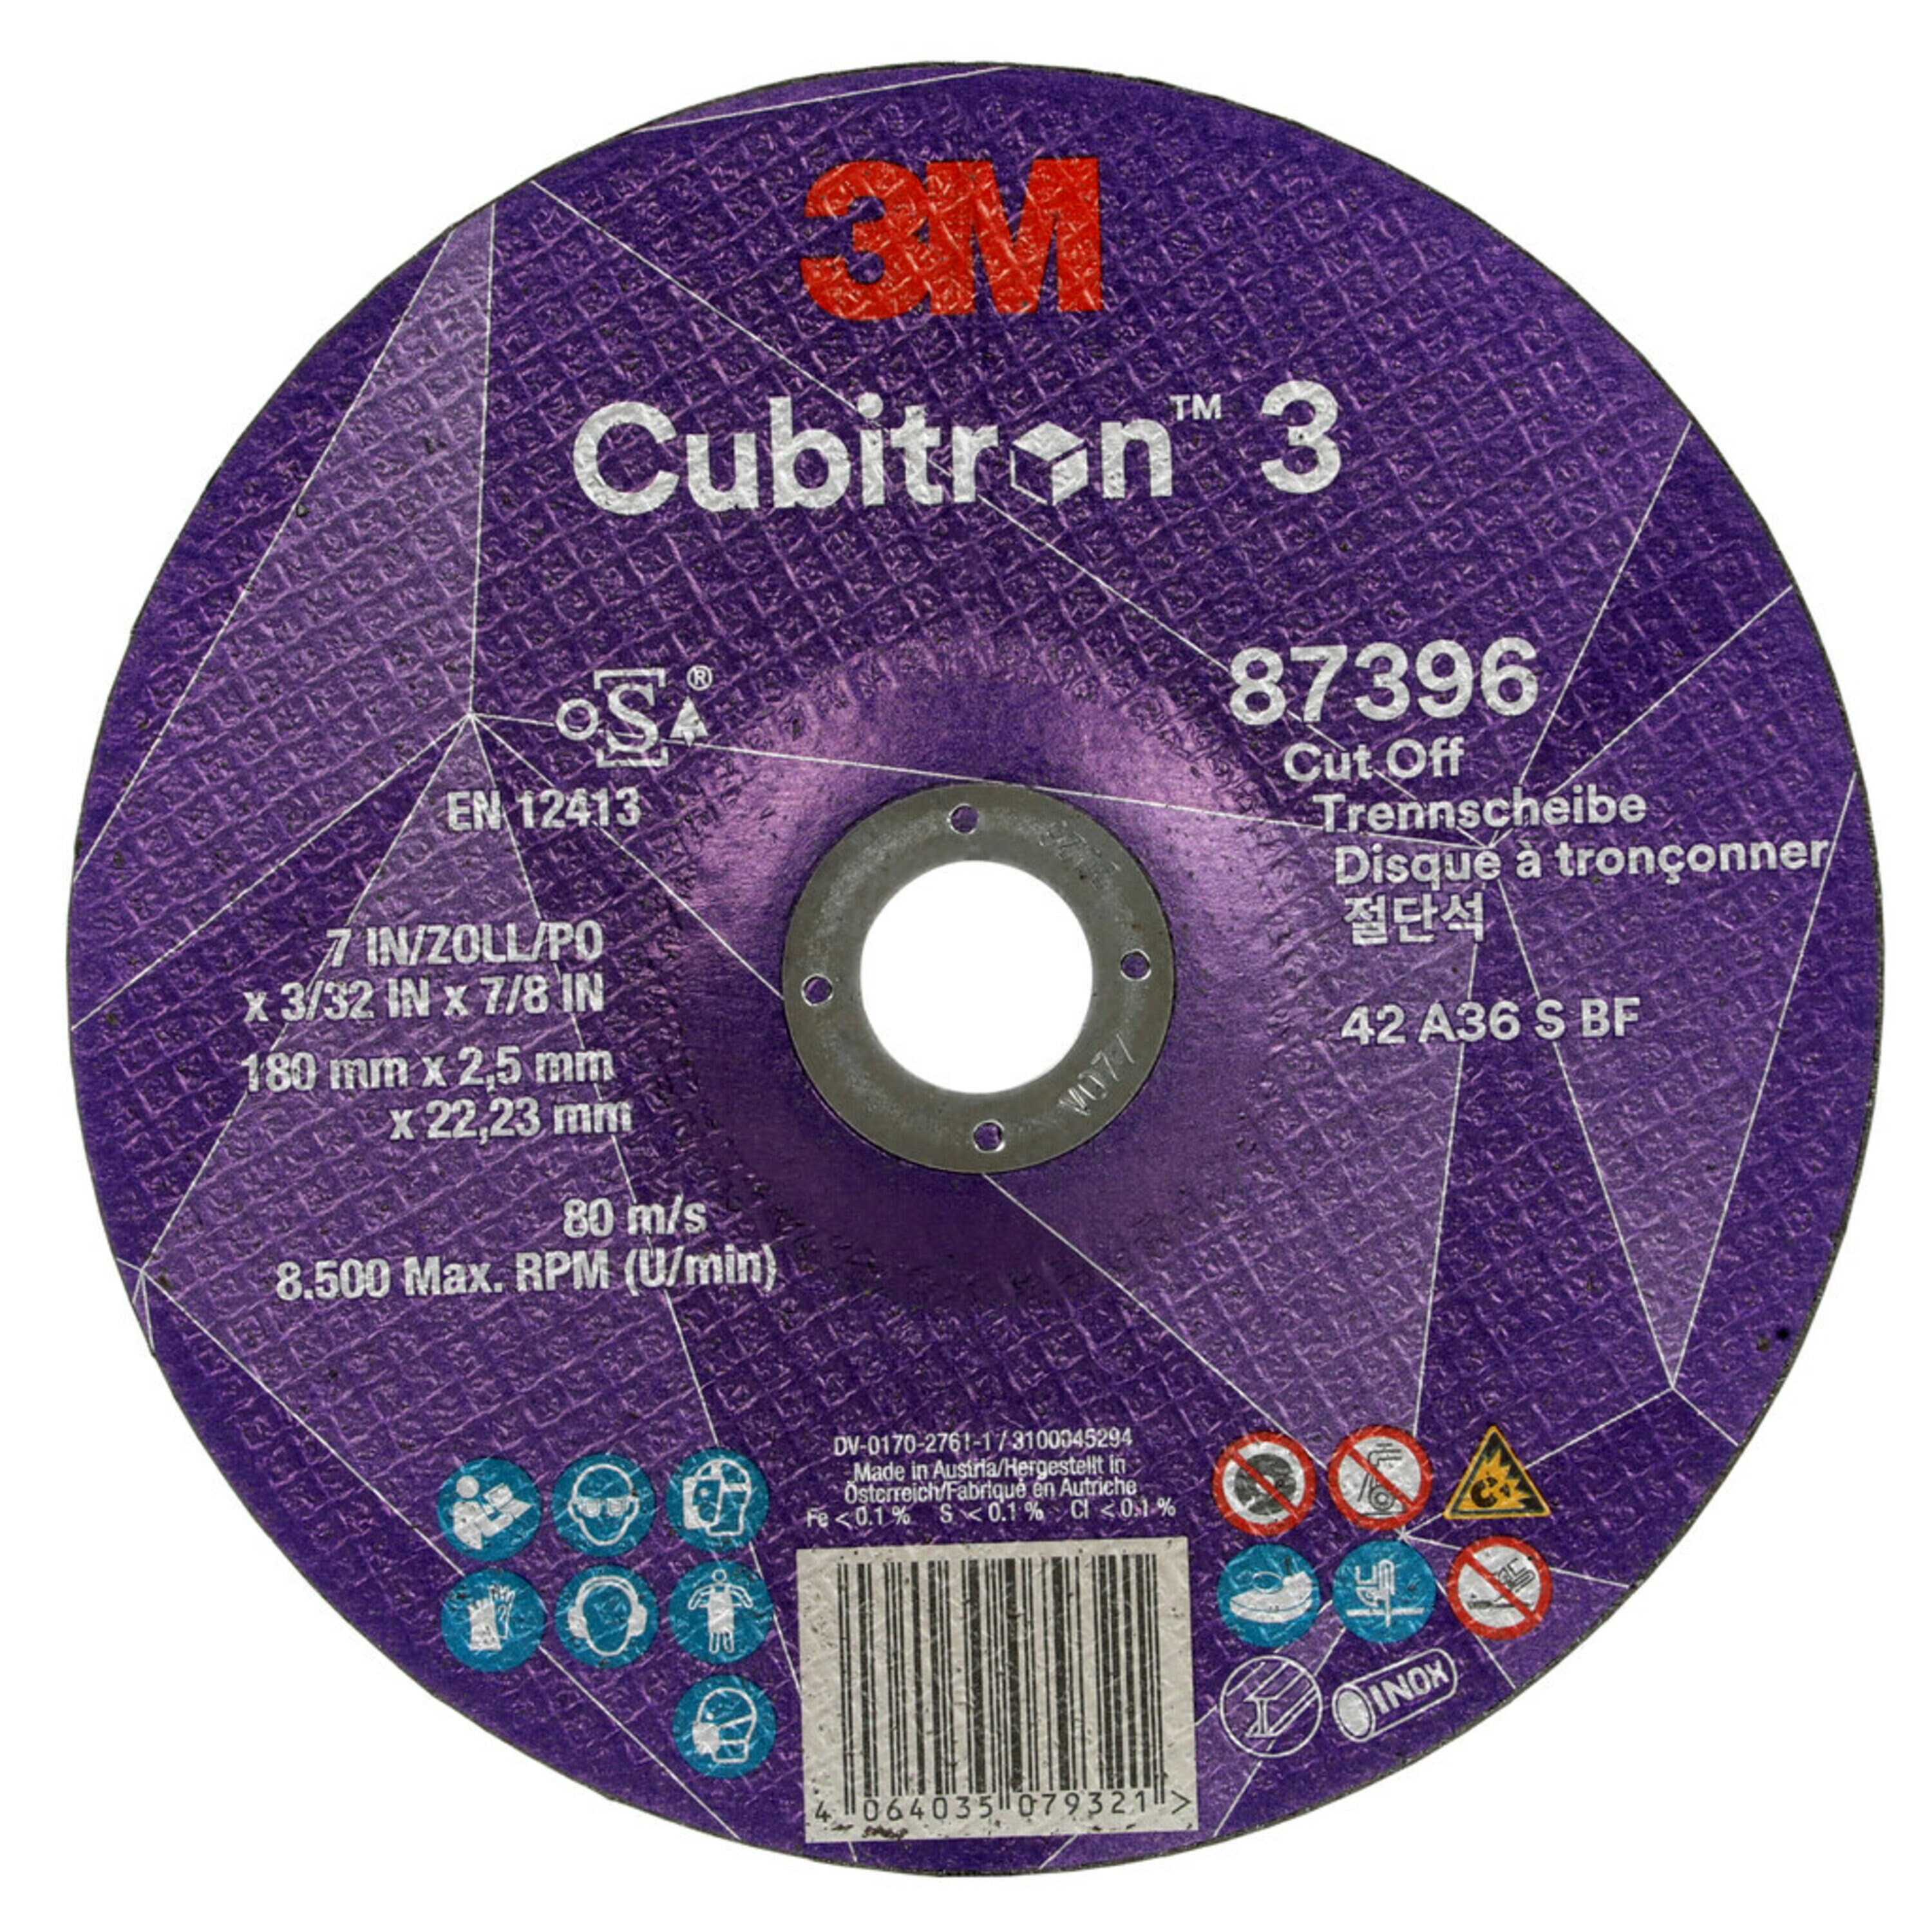 Disco da taglio 3M Cubitron 3, 180 mm, 2,5 mm, 22,23 mm, 36+, tipo 42 #87396